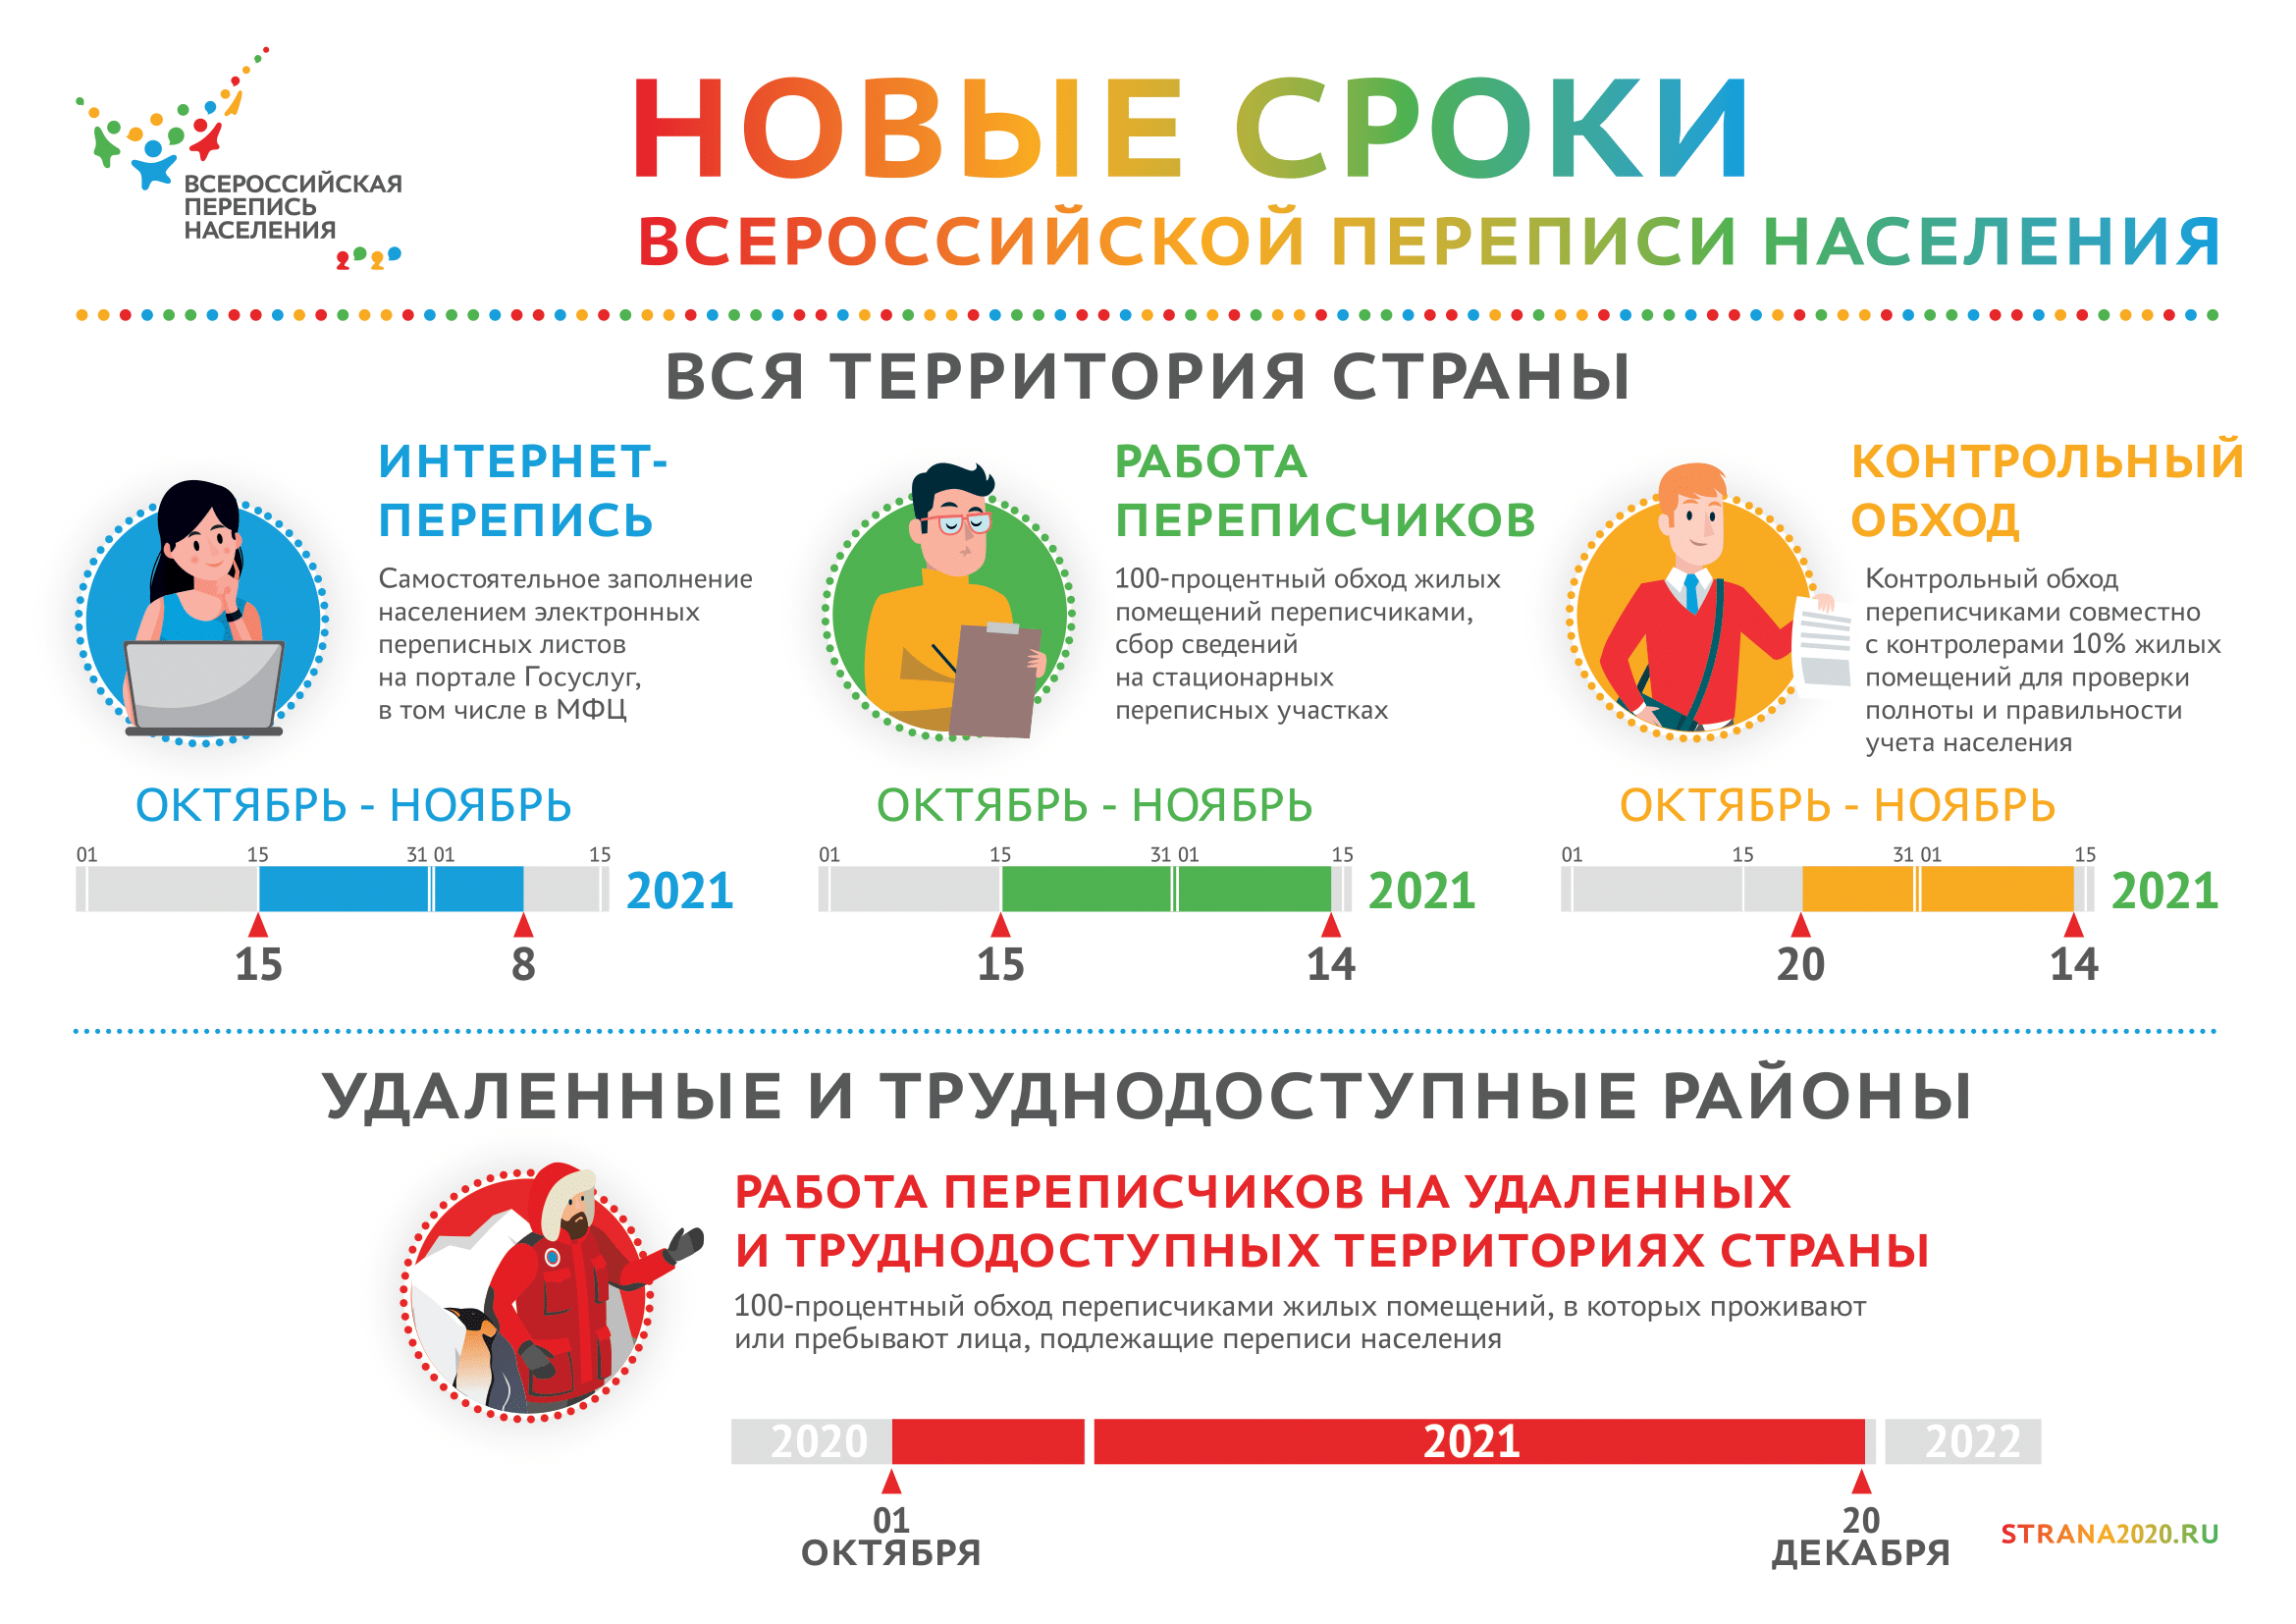 Сроки проведения всероссийской переписи населения